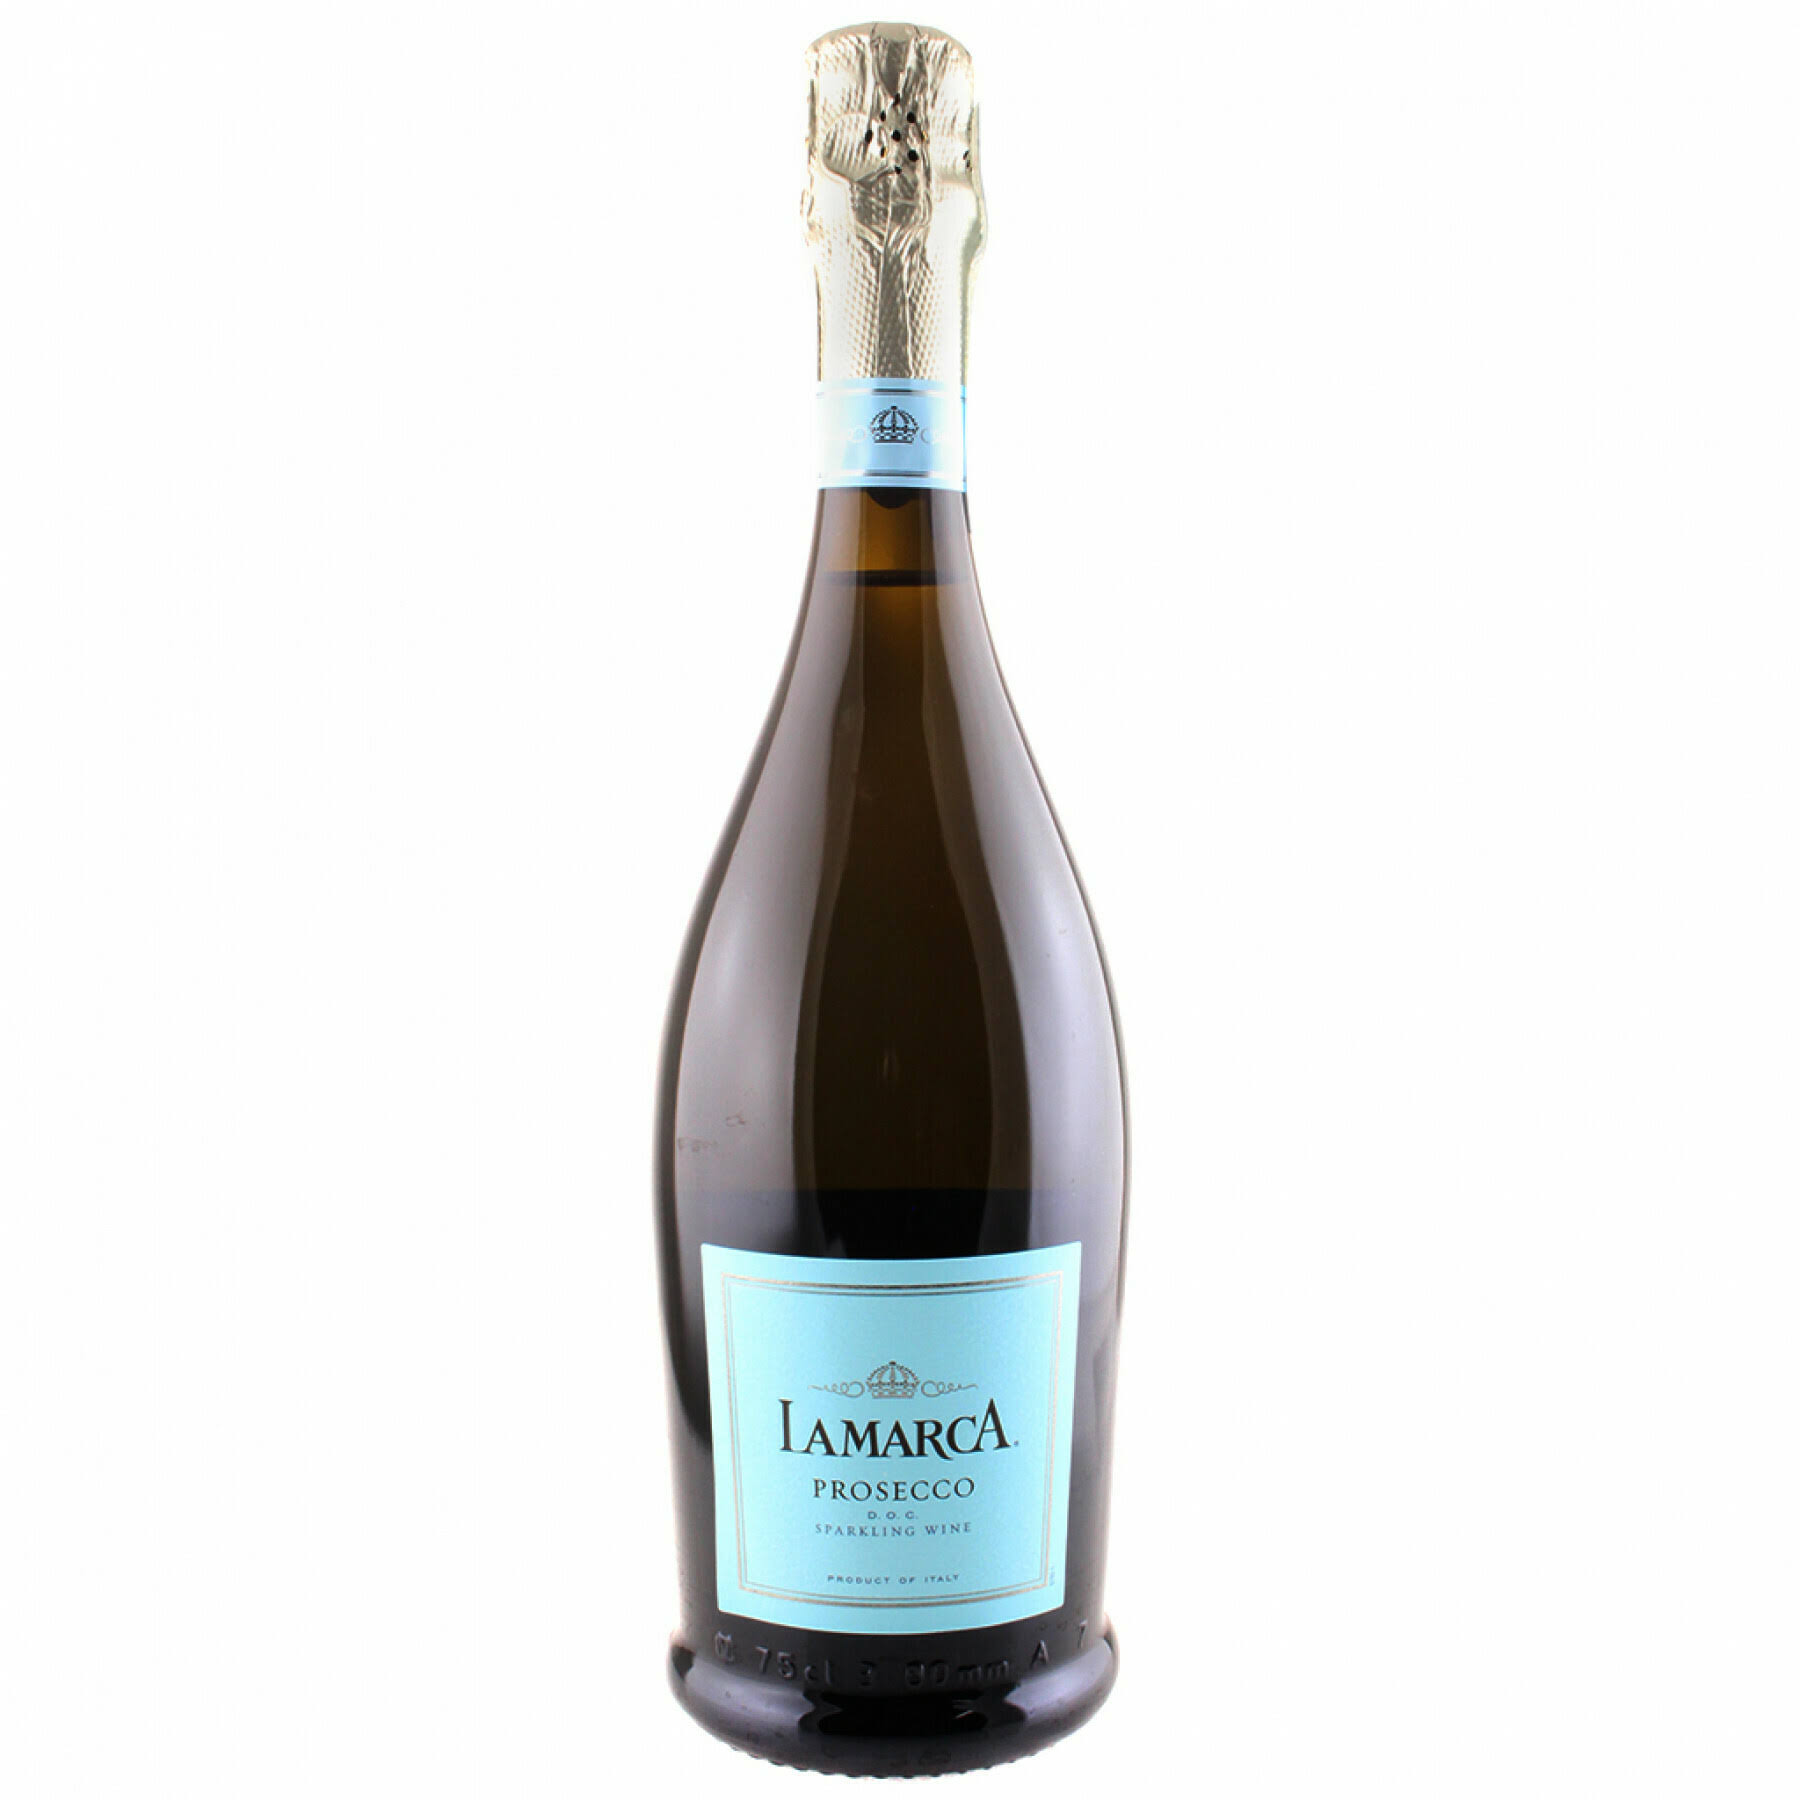 Lamarca Prosecco Sparkling Wine - Italy